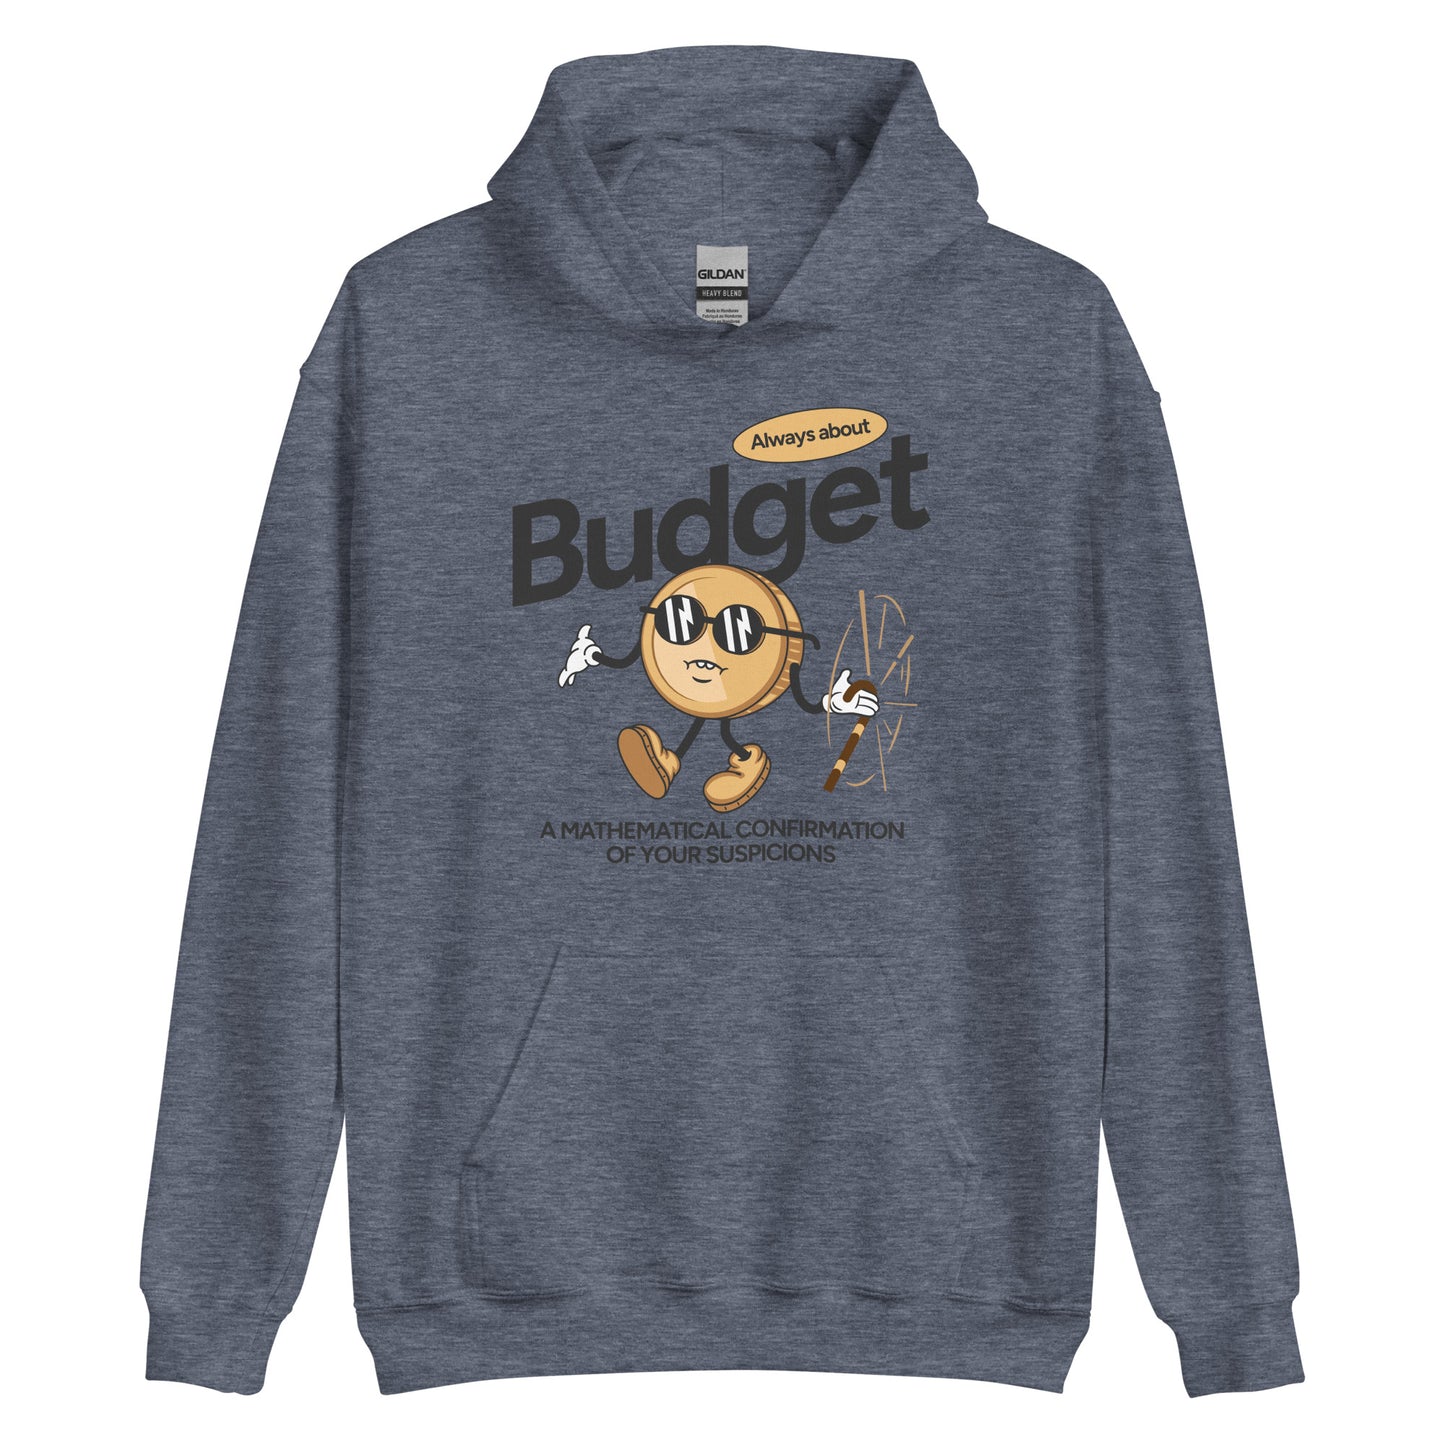 Money Man Budget Mascot Hoodie